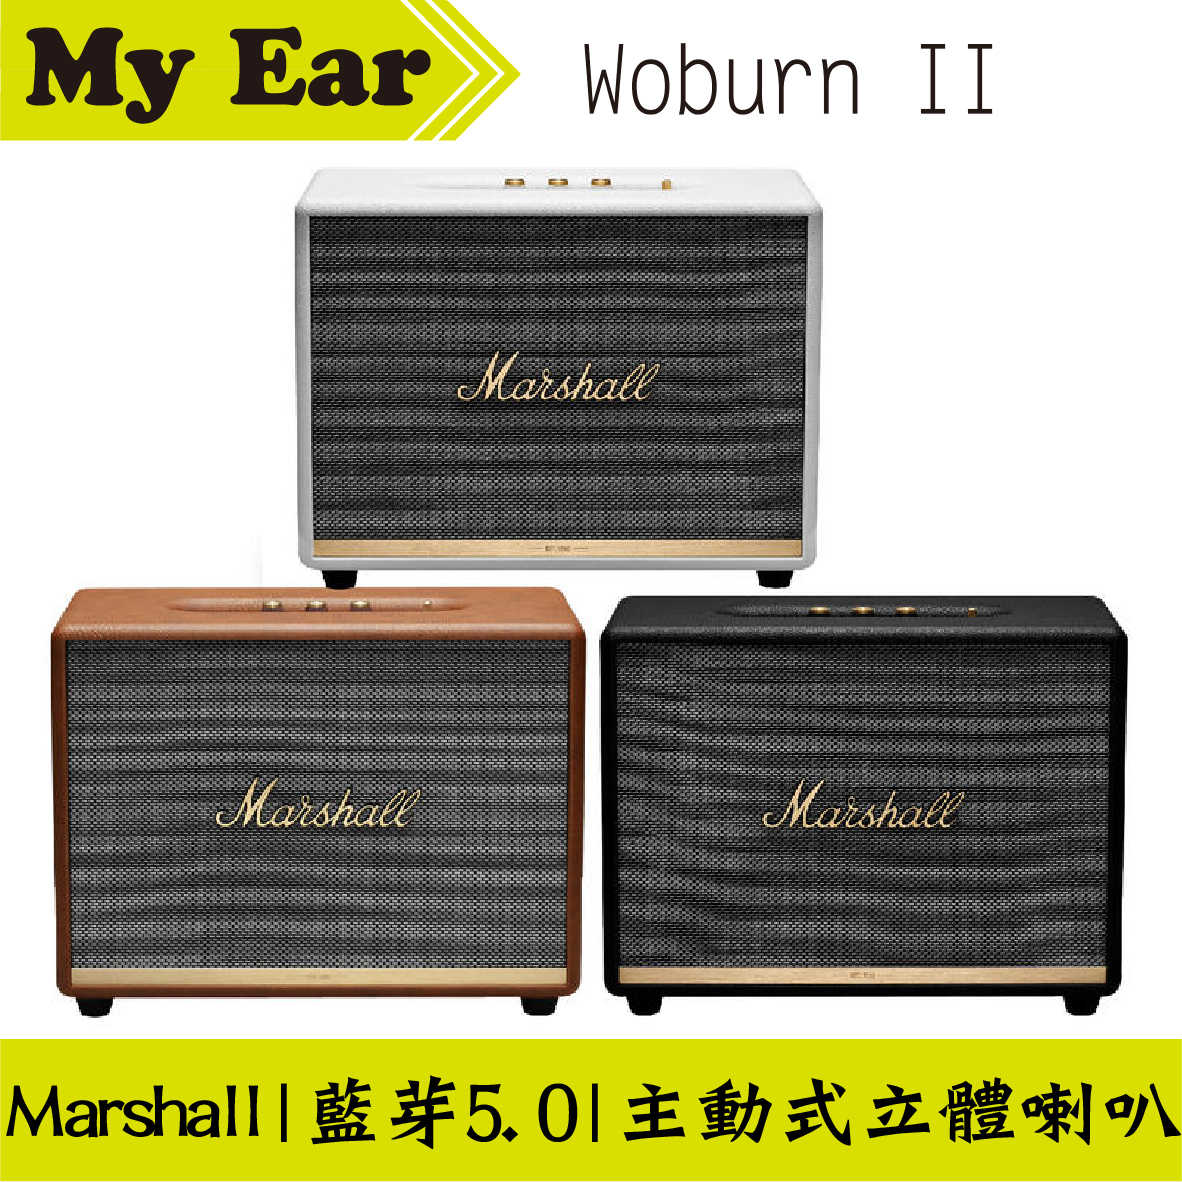 Marshall Woburn II 二代 藍芽 喇叭 音響 奶油白 | My Ear耳機專門店